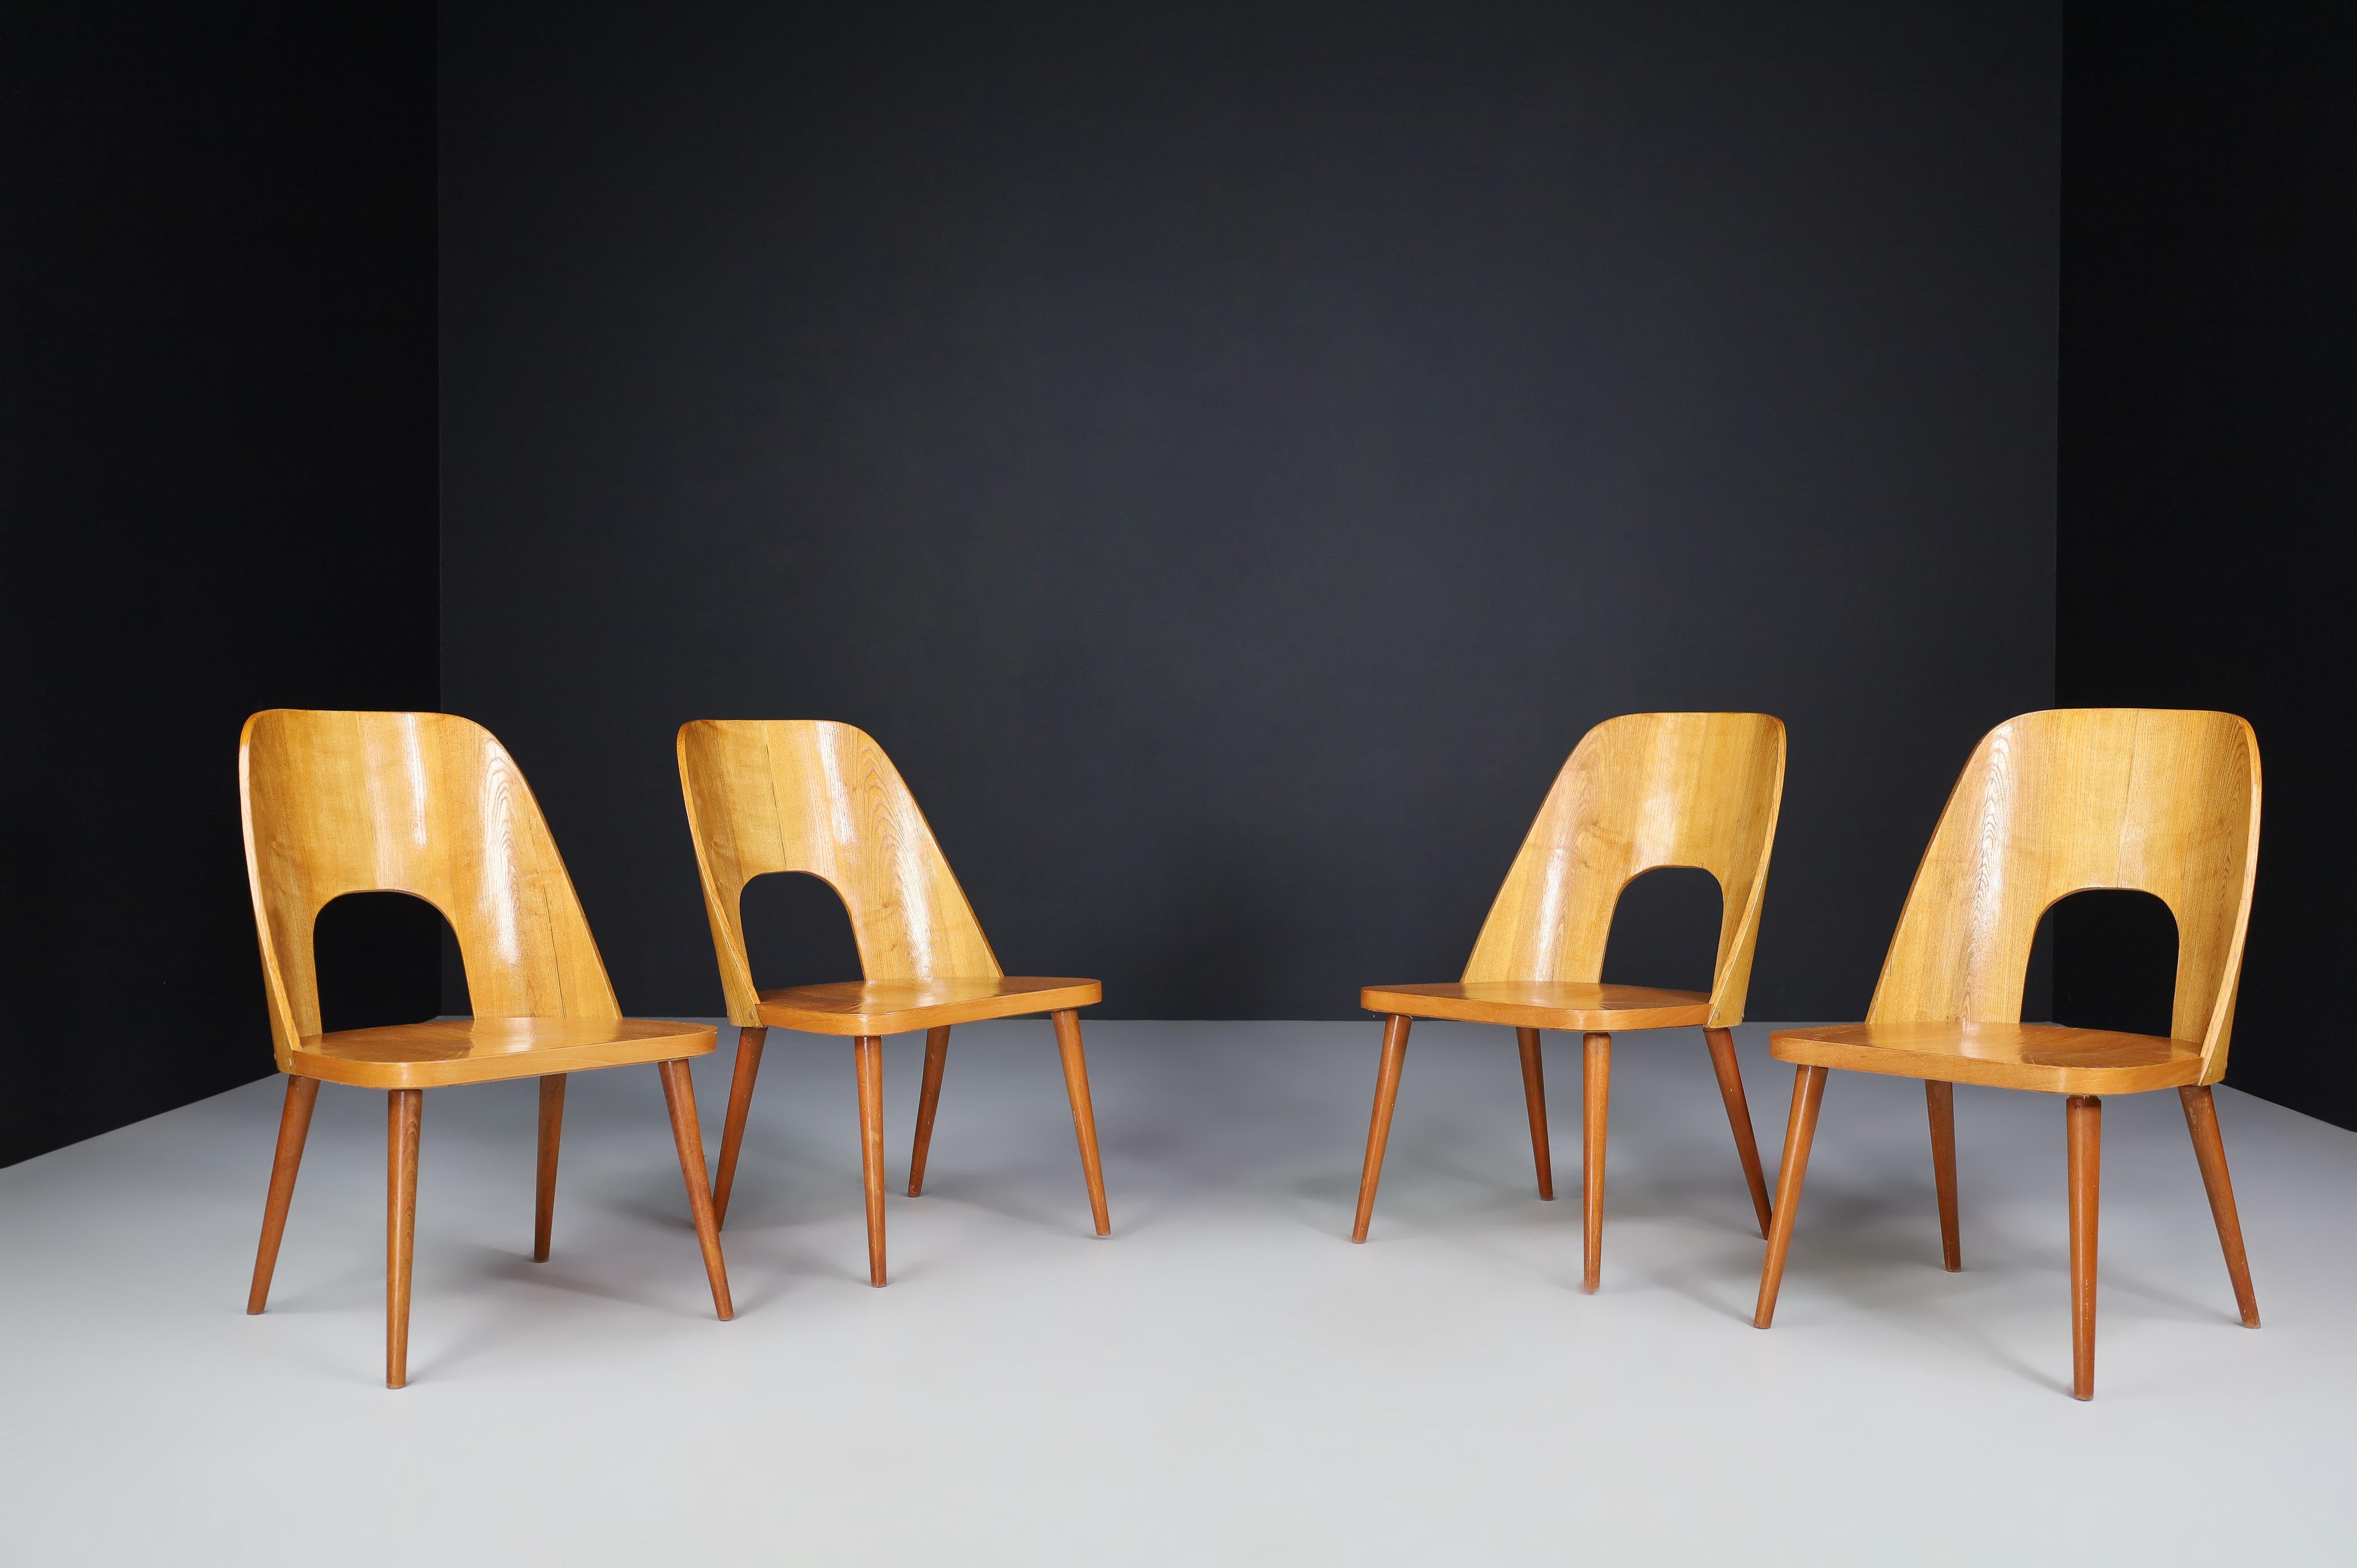 Ensemble de quatre fauteuils Oswald Haerdtl, années 1950

Un ensemble rare de quatre fauteuils a été conçu par le designer autrichien Oswald Haerdtl et produit par Ton (Thonet) dans l'ancienne Tchécoslovaquie des années 1950. Chaises